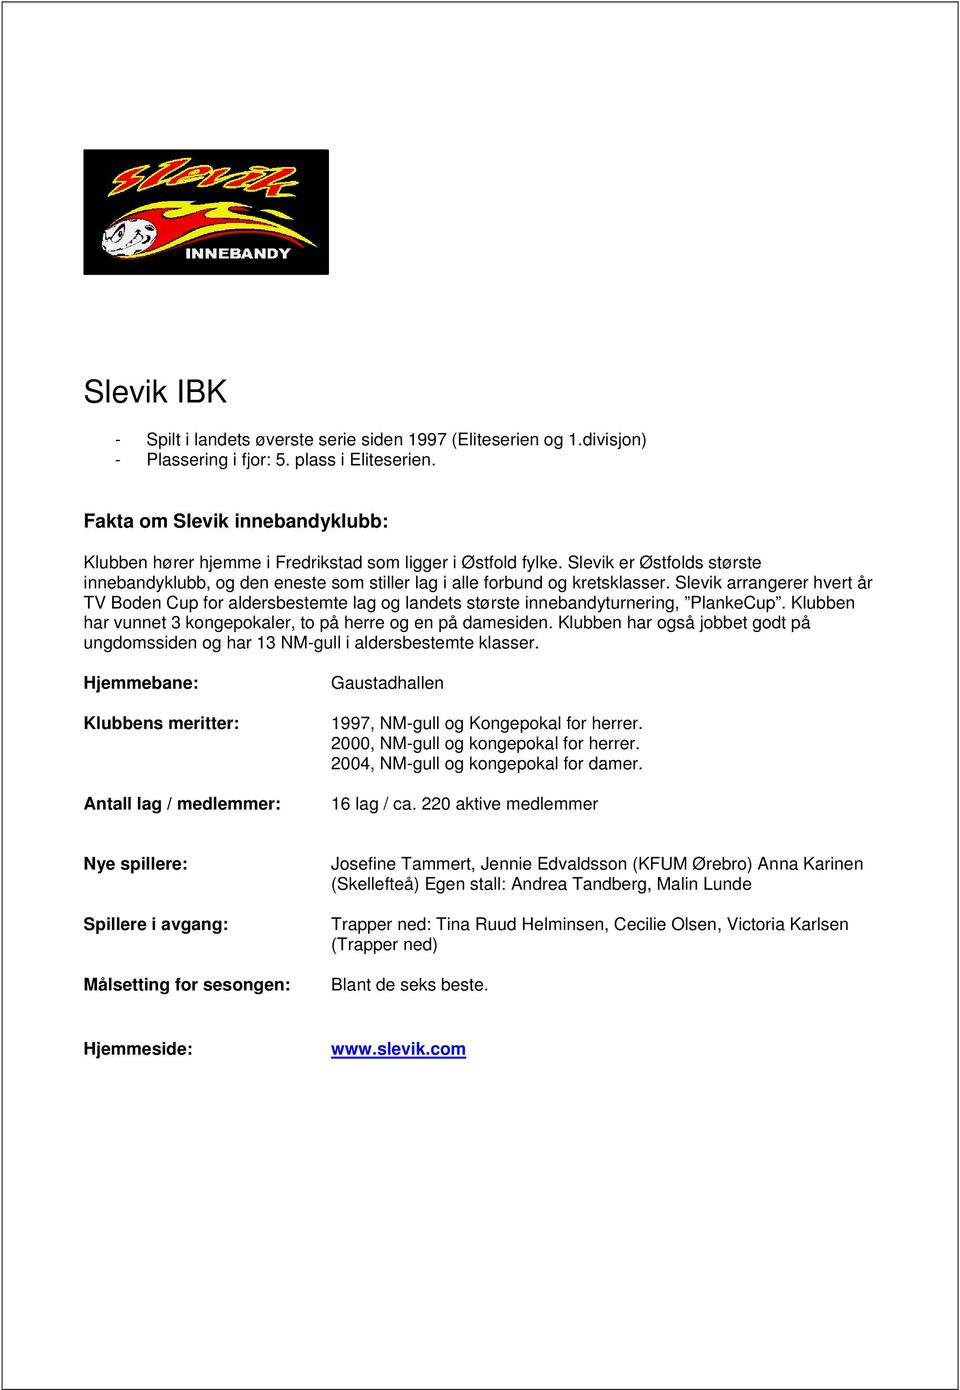 Slevik arrangerer hvert år TV Boden Cup for aldersbestemte lag og landets største innebandyturnering, PlankeCup. Klubben har vunnet 3 kongepokaler, to på herre og en på damesiden.